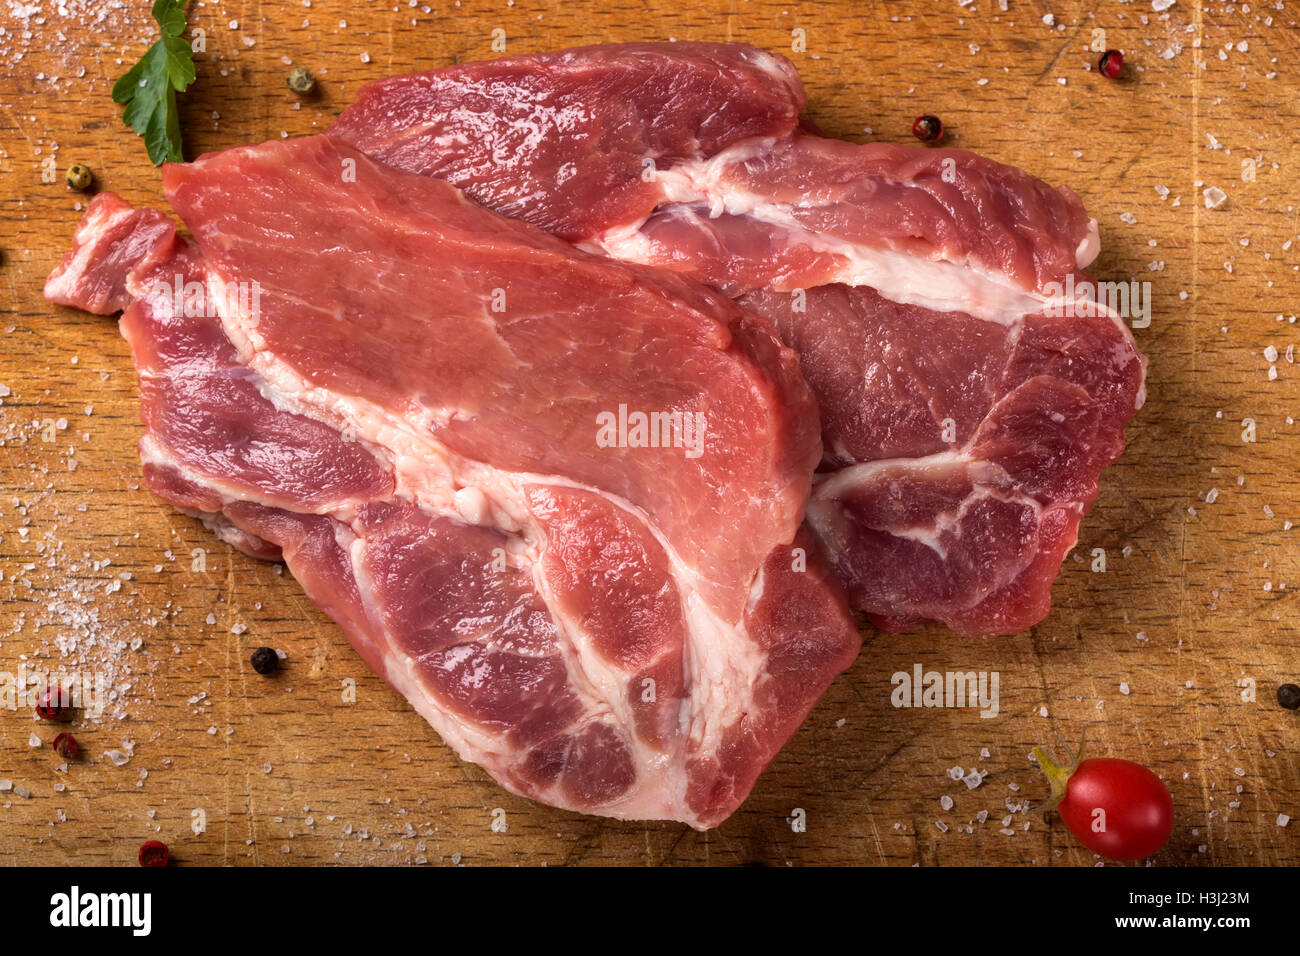 Rohes Schweinefleisch Steaks auf Holzbrett mit Kräutern Stockfoto